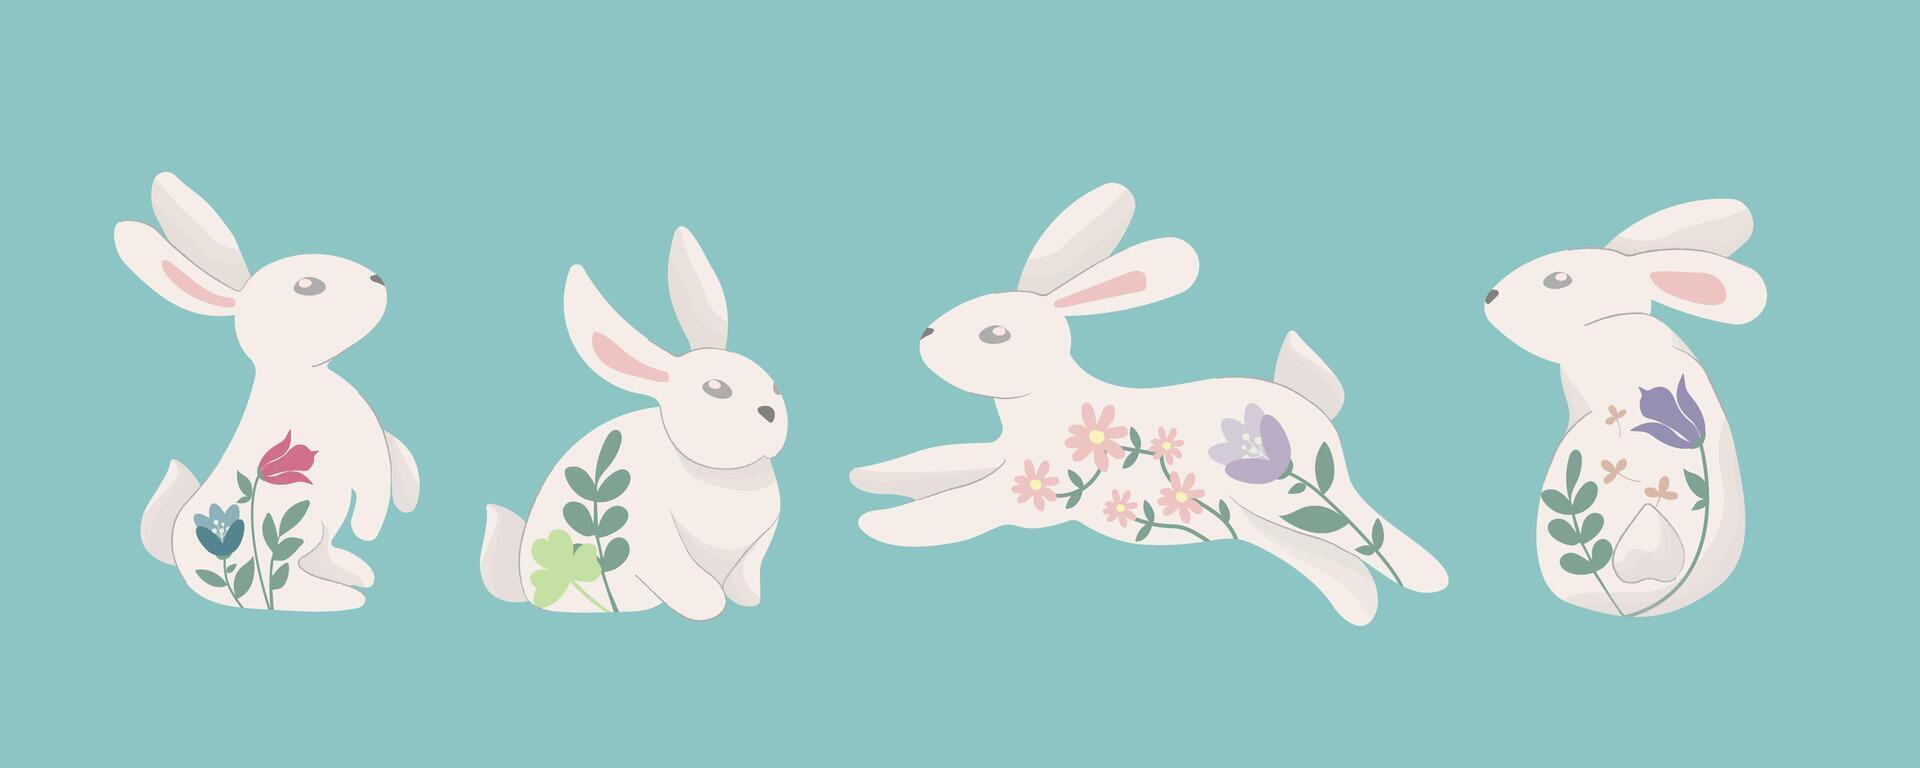 Pascua de Resurrección conejito de moda colocar. conjunto de linda blanco conejos o liebres plano dibujos animados vistoso ilustración vector